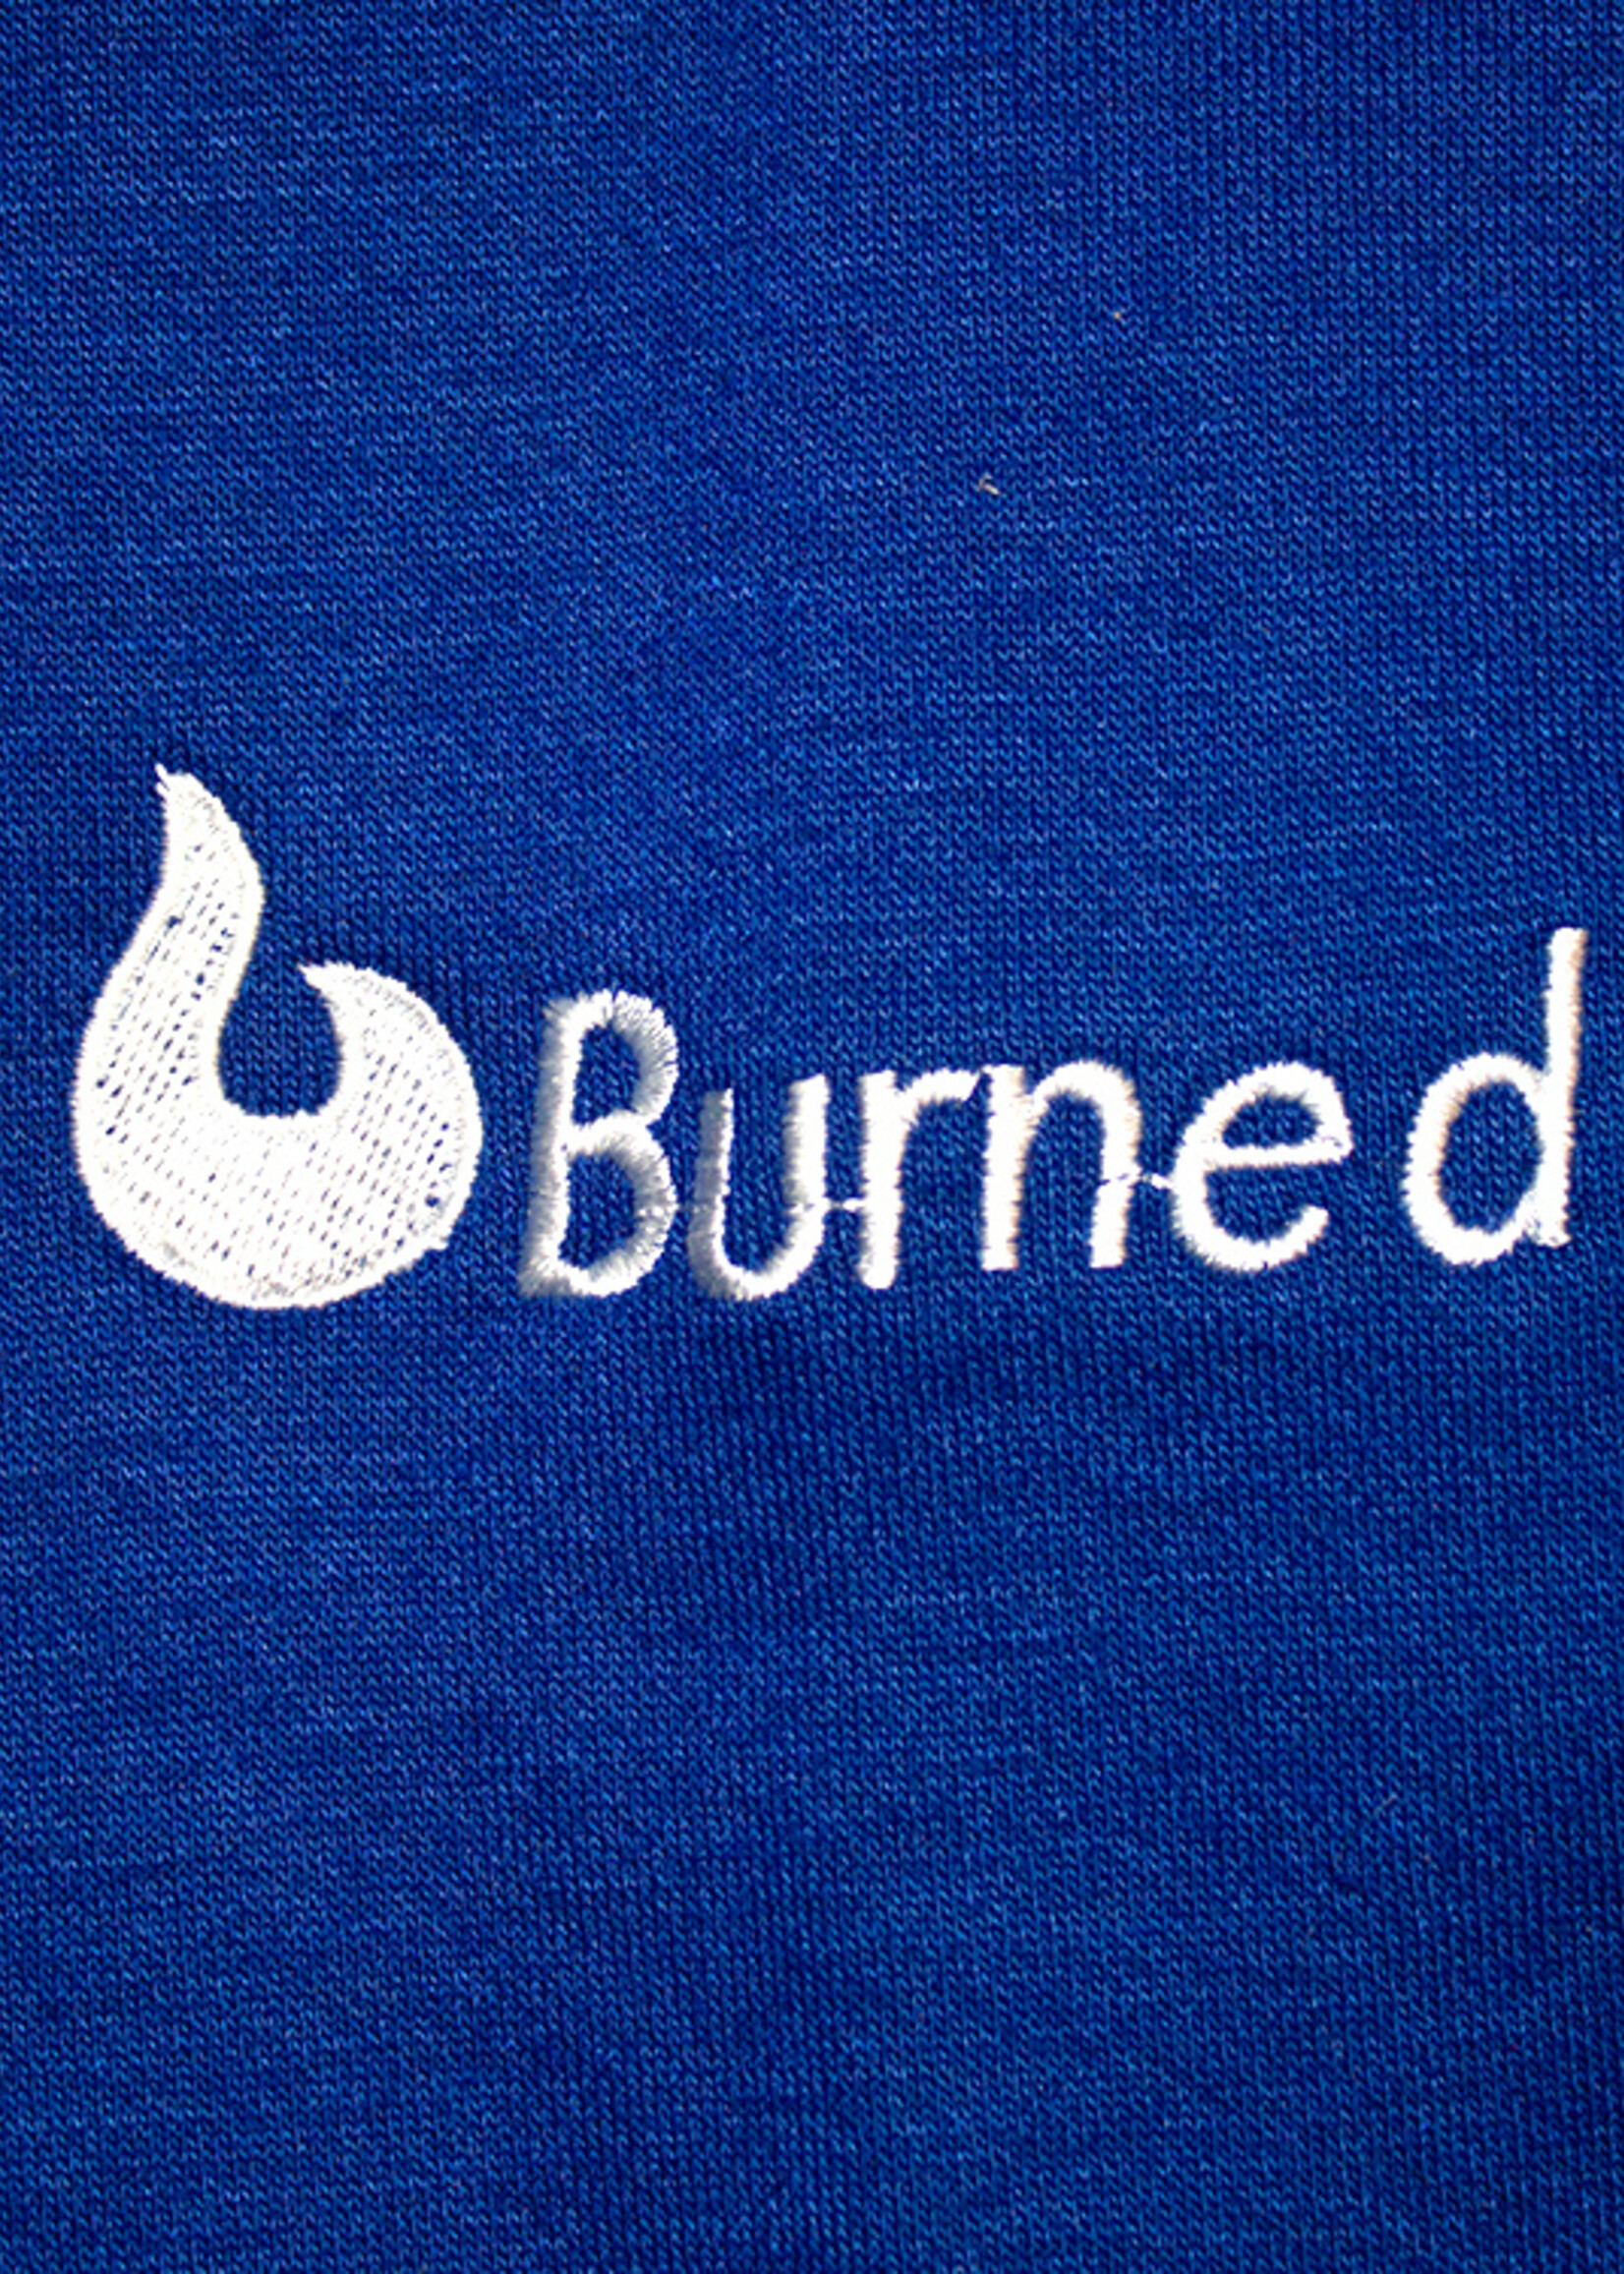 Burned Burned Col Rond Bleu Royal